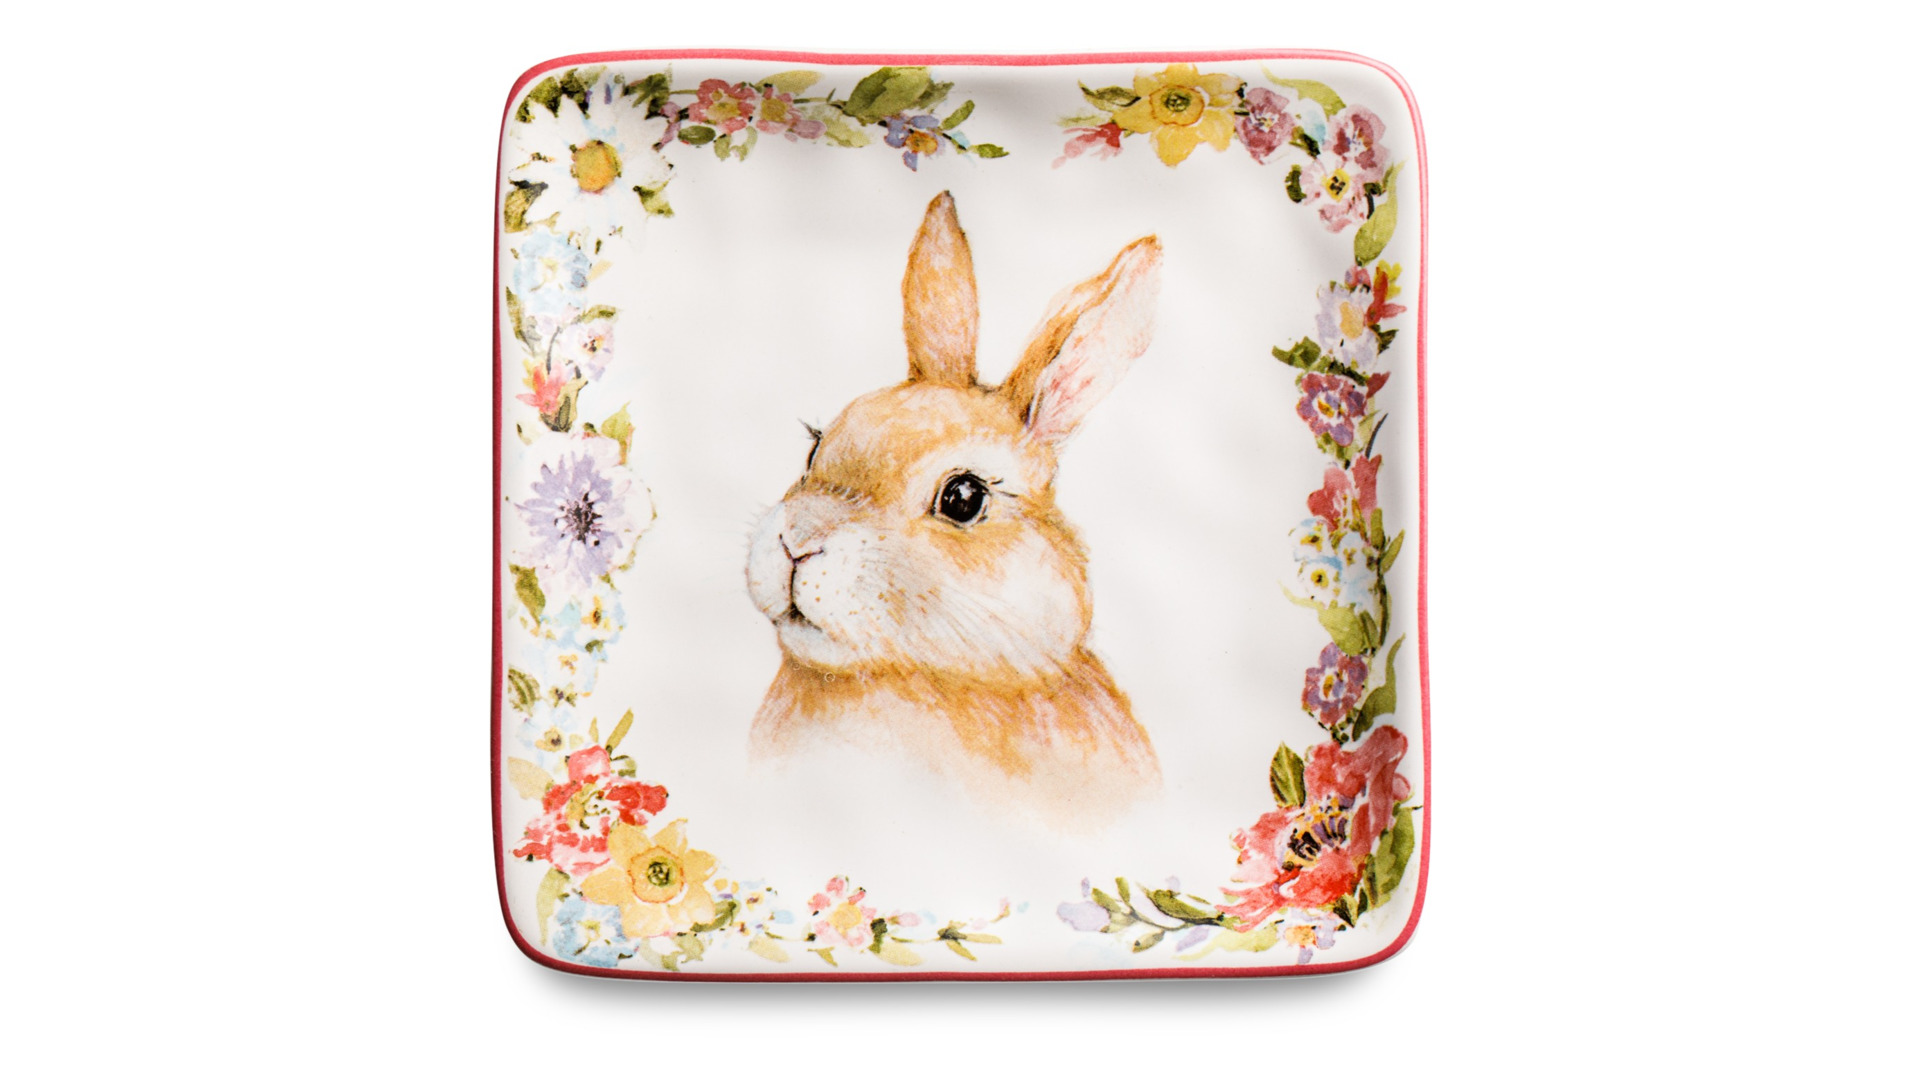 Тарелка пирожковая квадратная Certified Int Весенний сад Кролик, взгляд налево 15 см, керамика